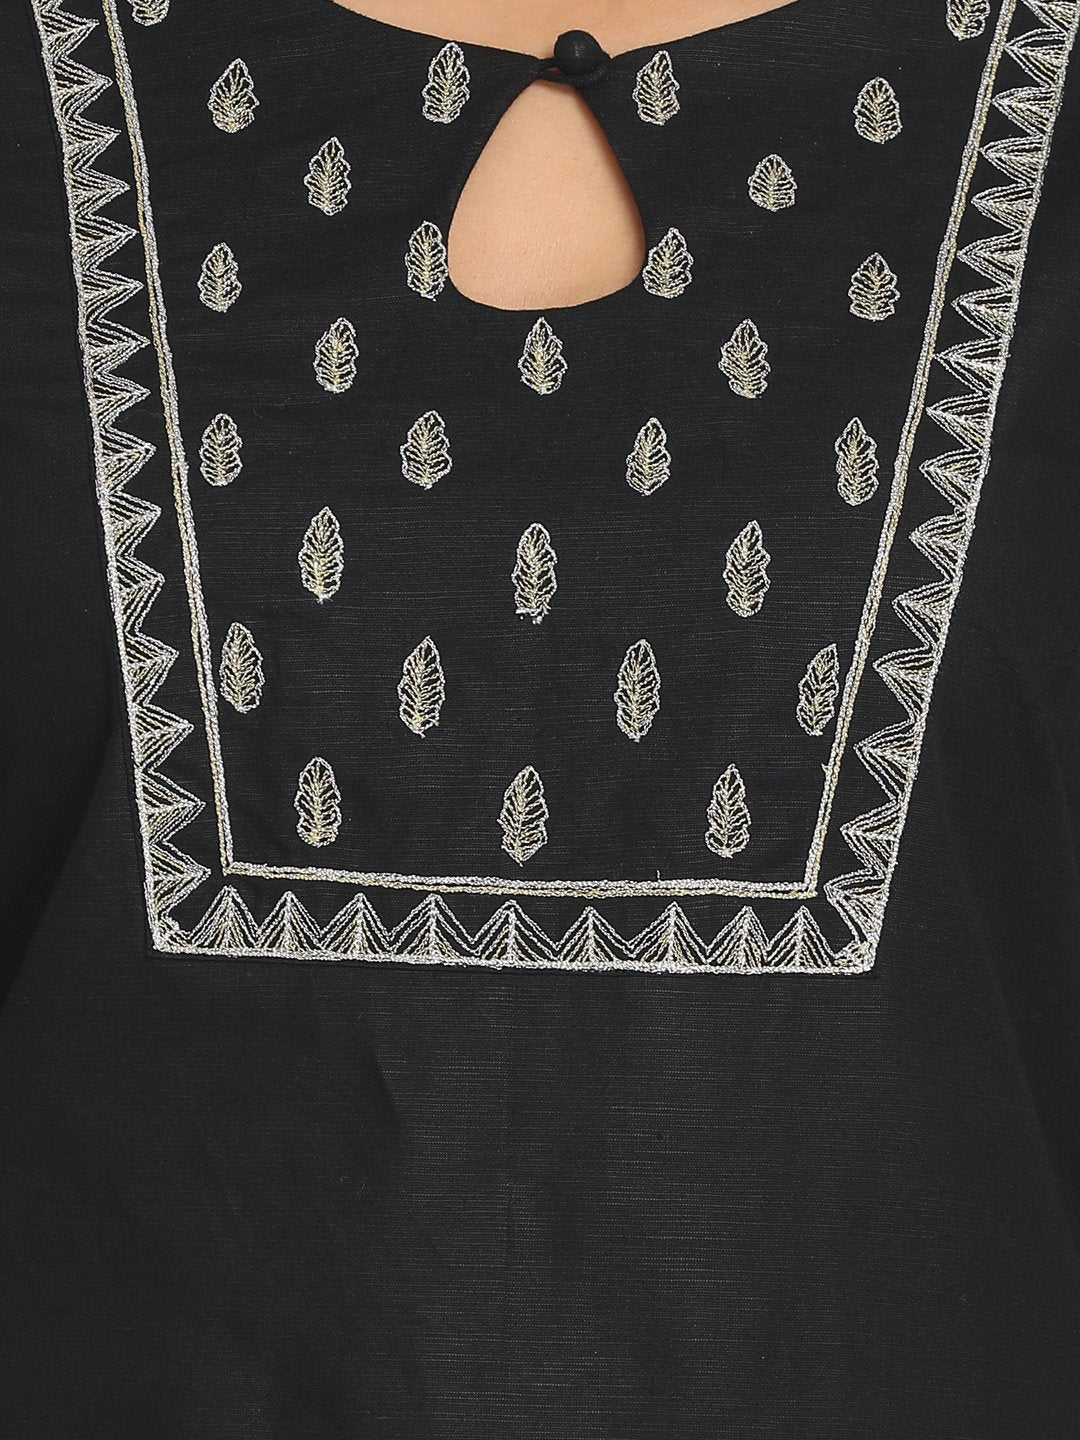 Zari embroidered Black Straight Long Kurta With Matching Mask